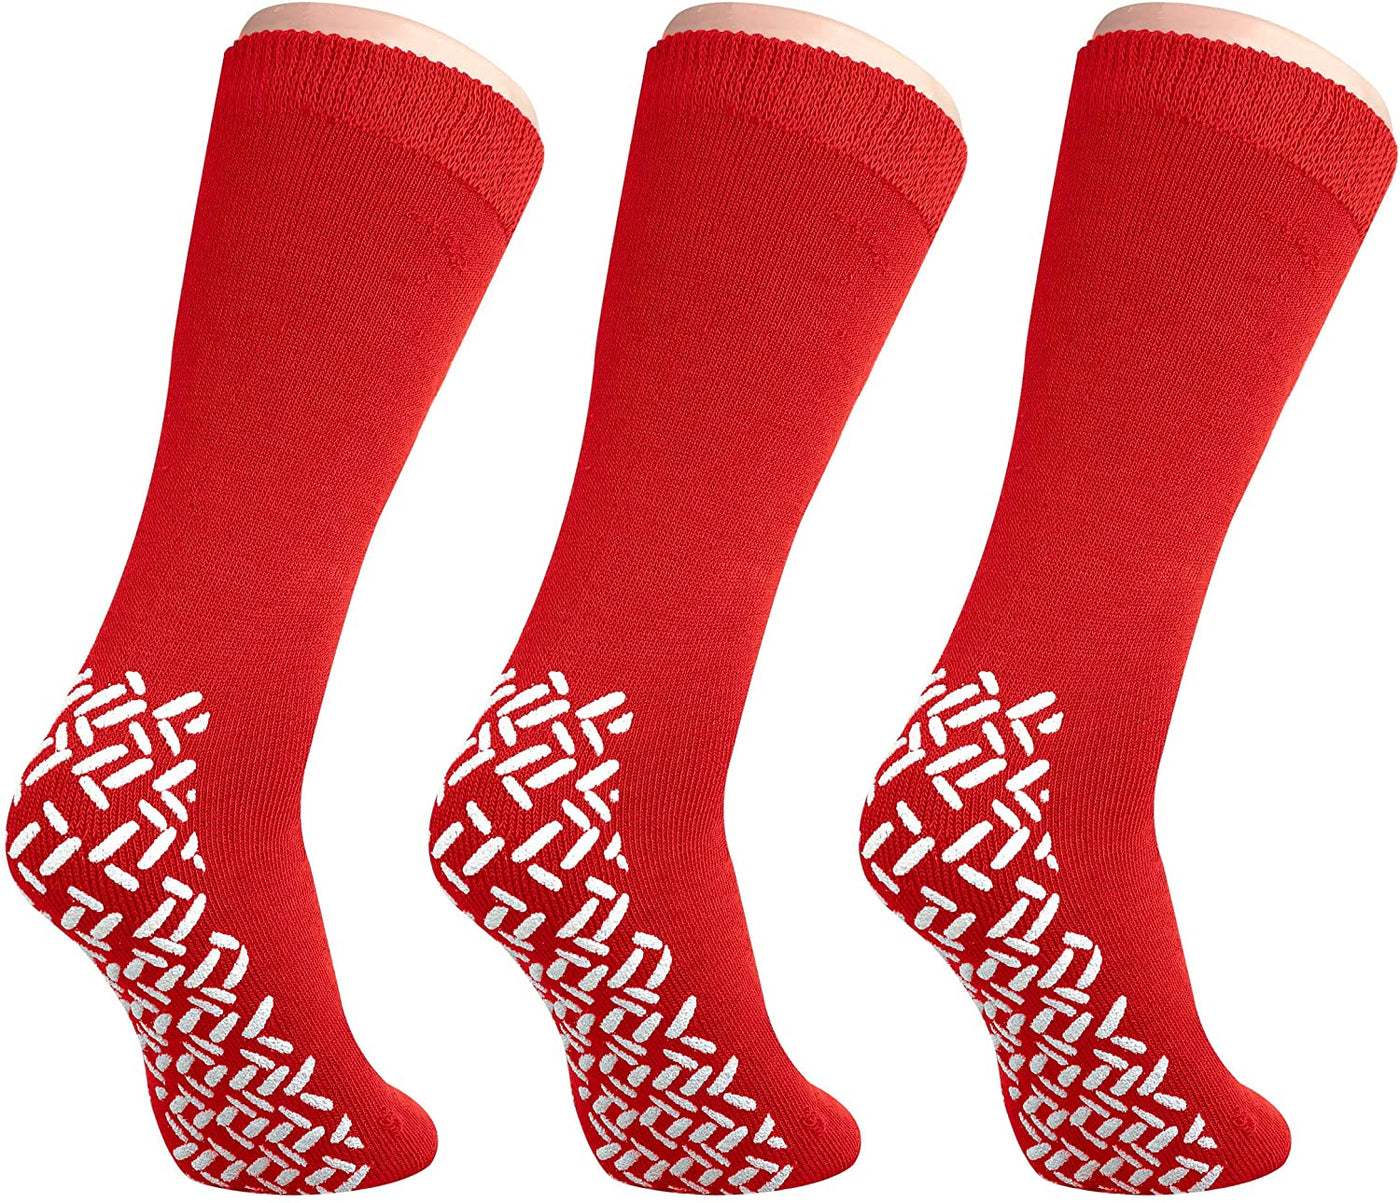 Double Sided Slipper Socks, Non Skid Hospital Travel Slipper Socks XXLGrey  2194